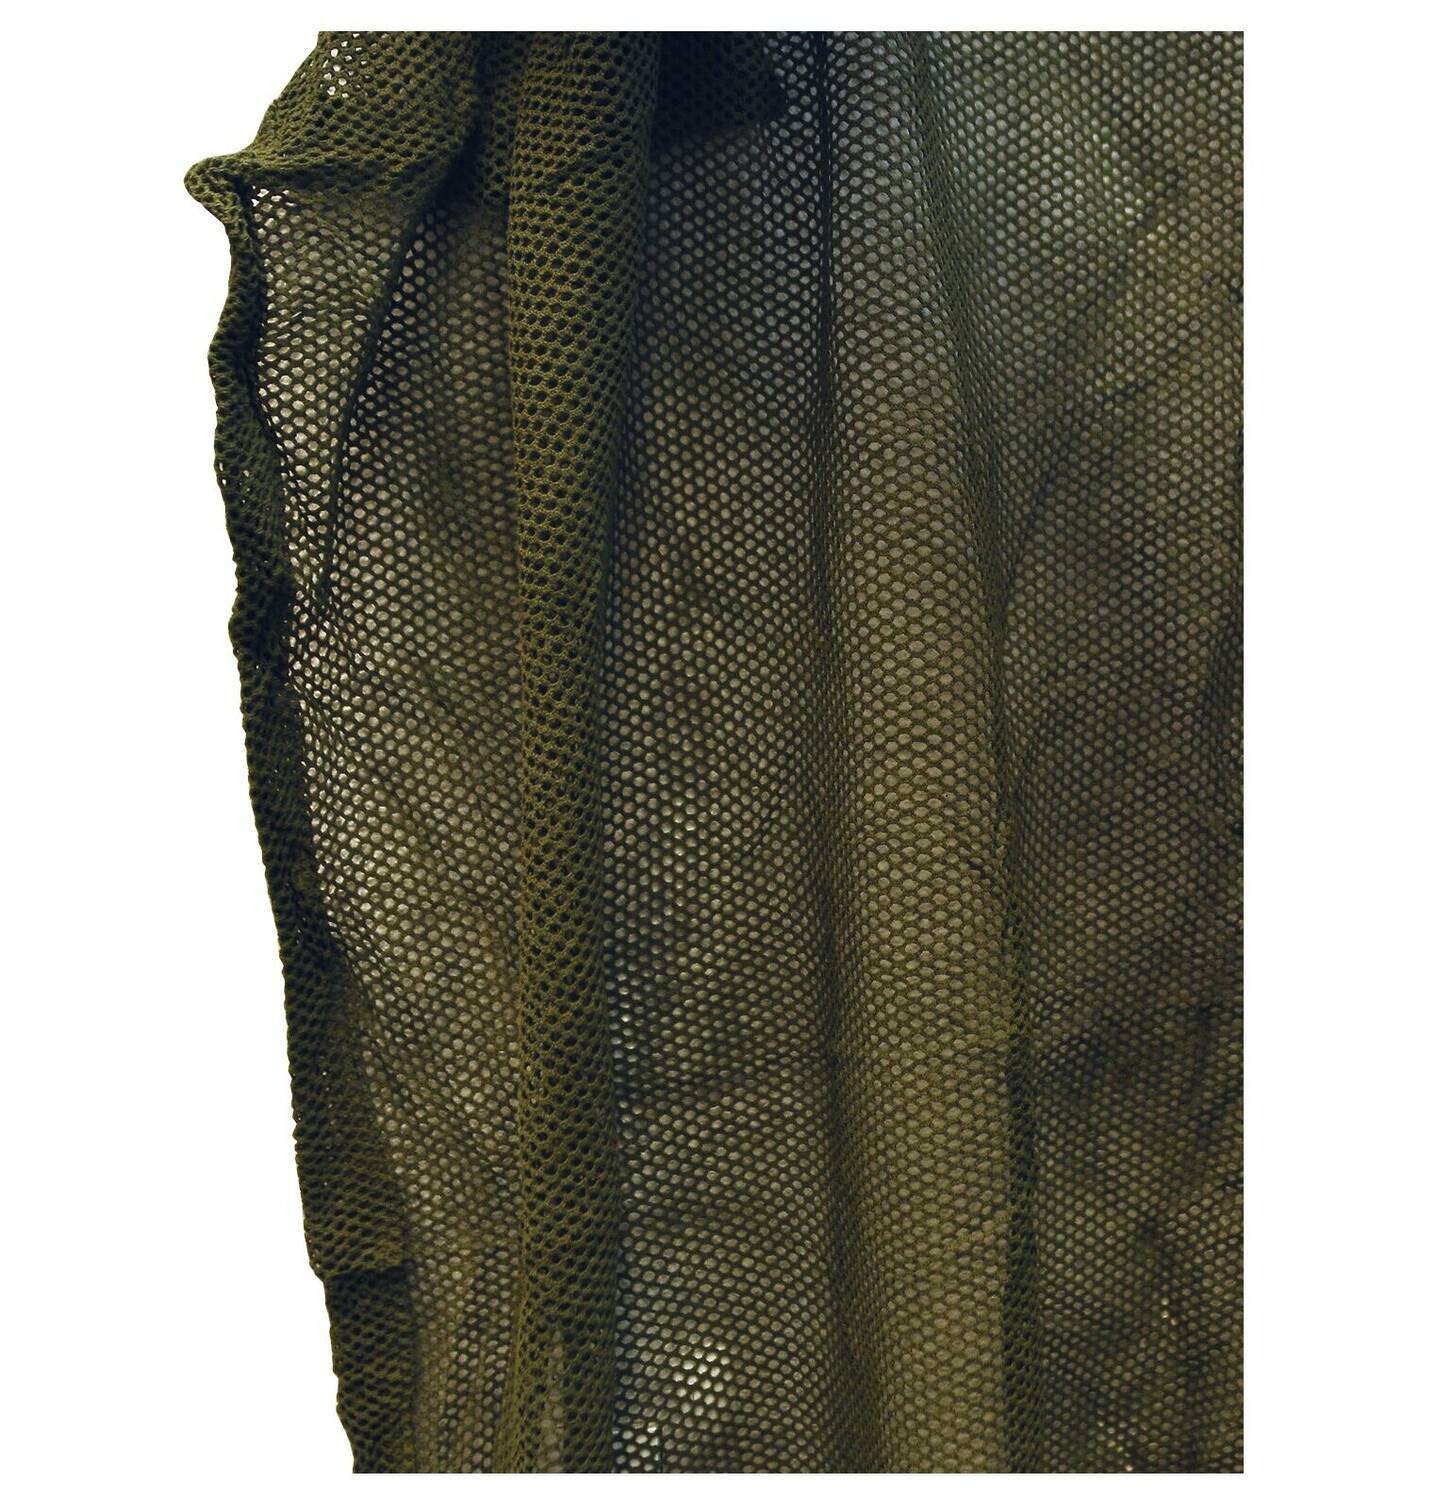 Filet de camouflage pour personne et équipement - 130 x 100 cm